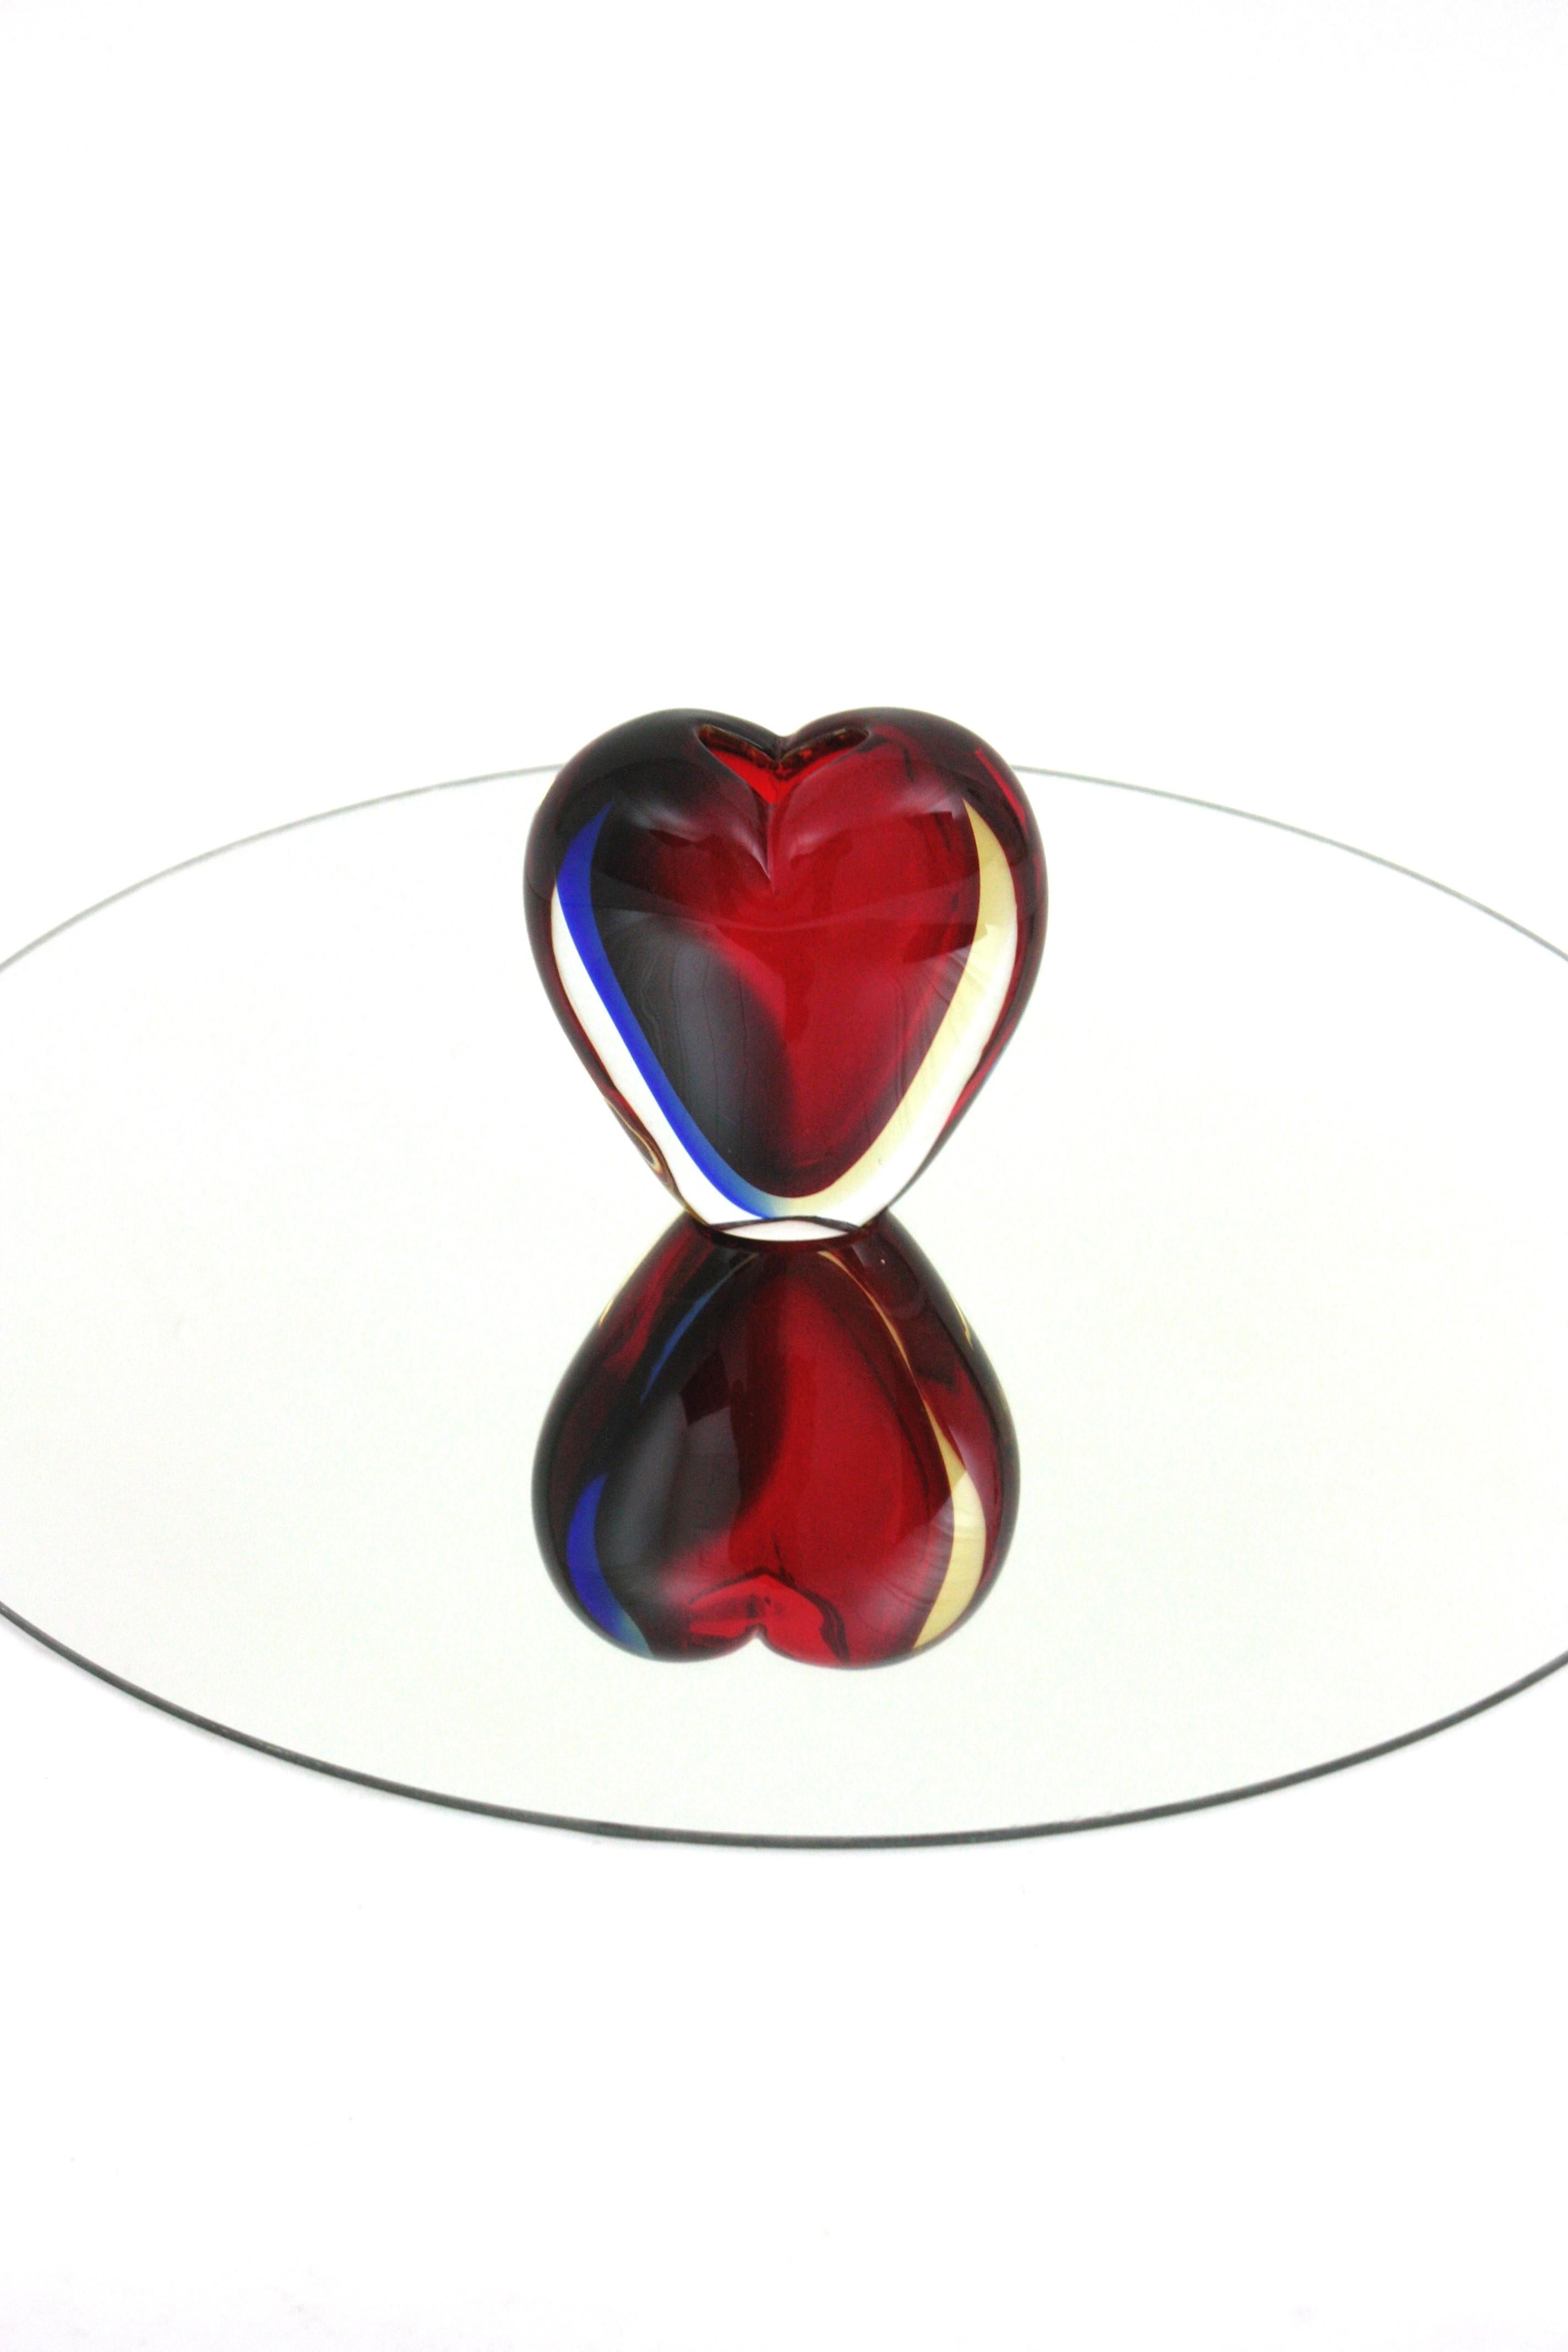 20th Century Luigi Onesto Signed Murano Heart Shaped Sommerso Art Glass Vase For Sale